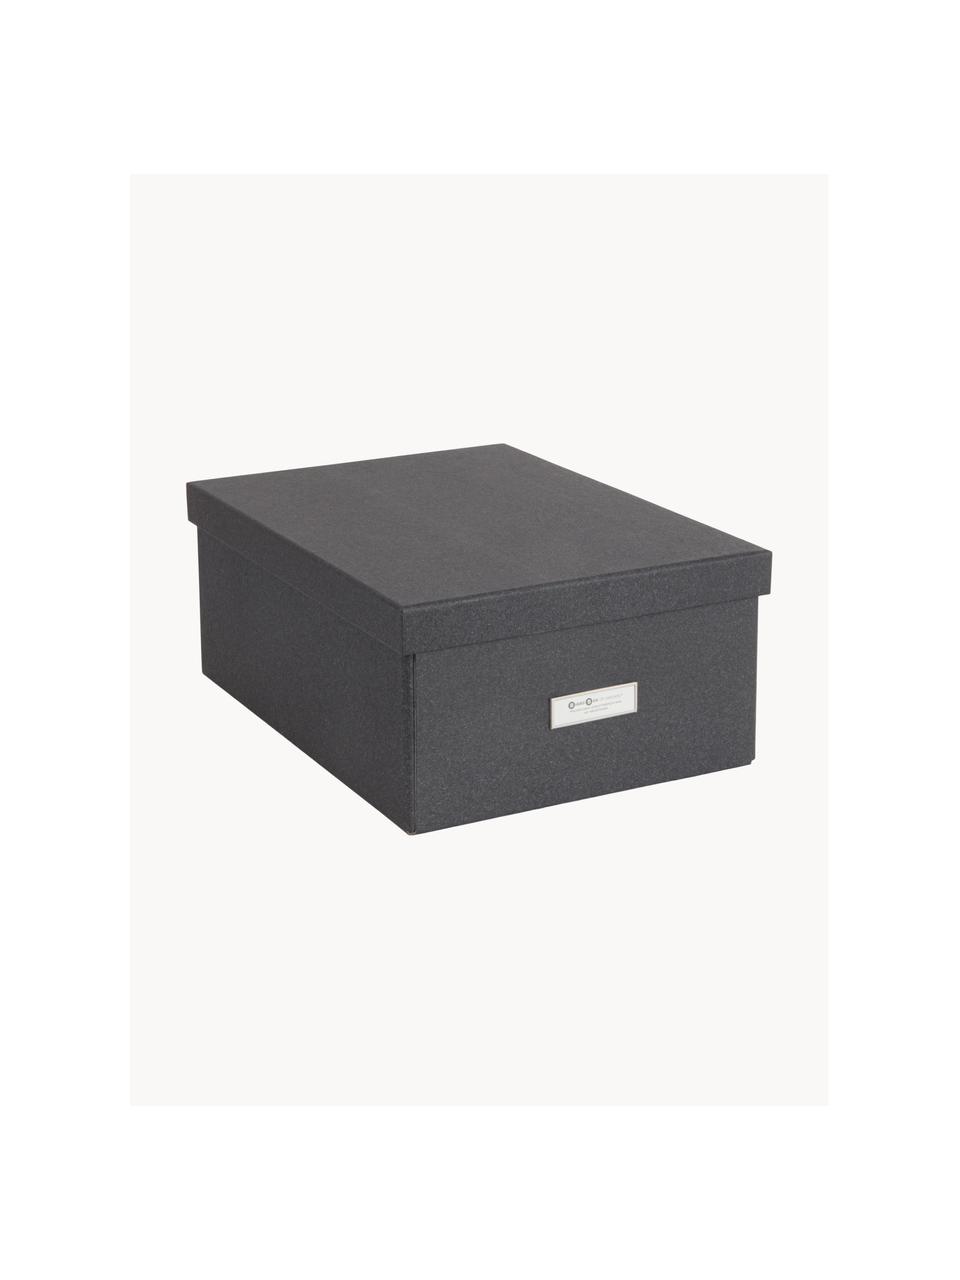 Skládací skladovací box Karin, 29 x H 39 cm, Plátno, pevný karton, Antracitová, Š 29 cm, D 39 cm